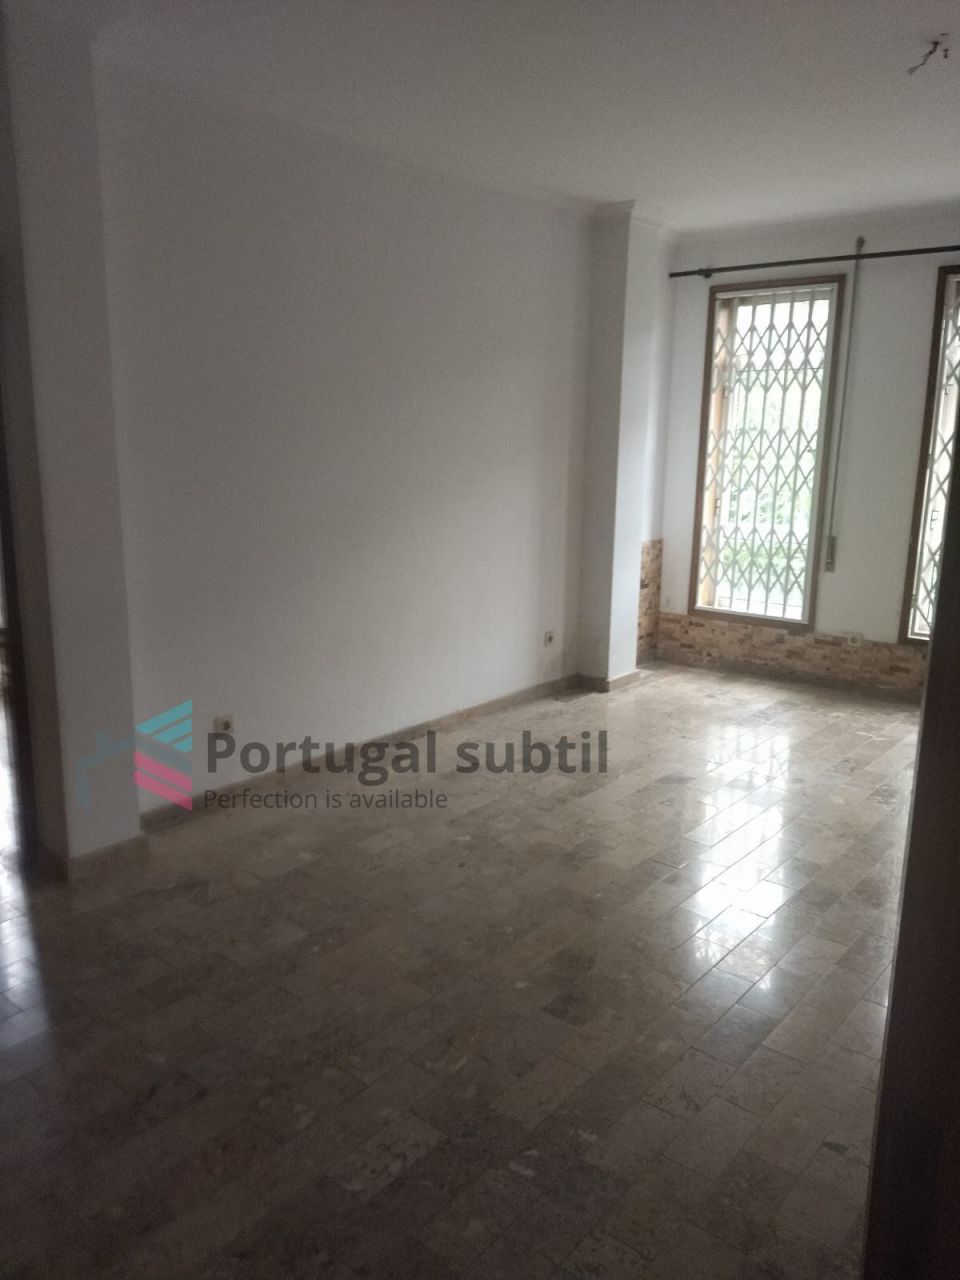 Wohnung in Porto, Portugal, 65 m2 - Foto 1